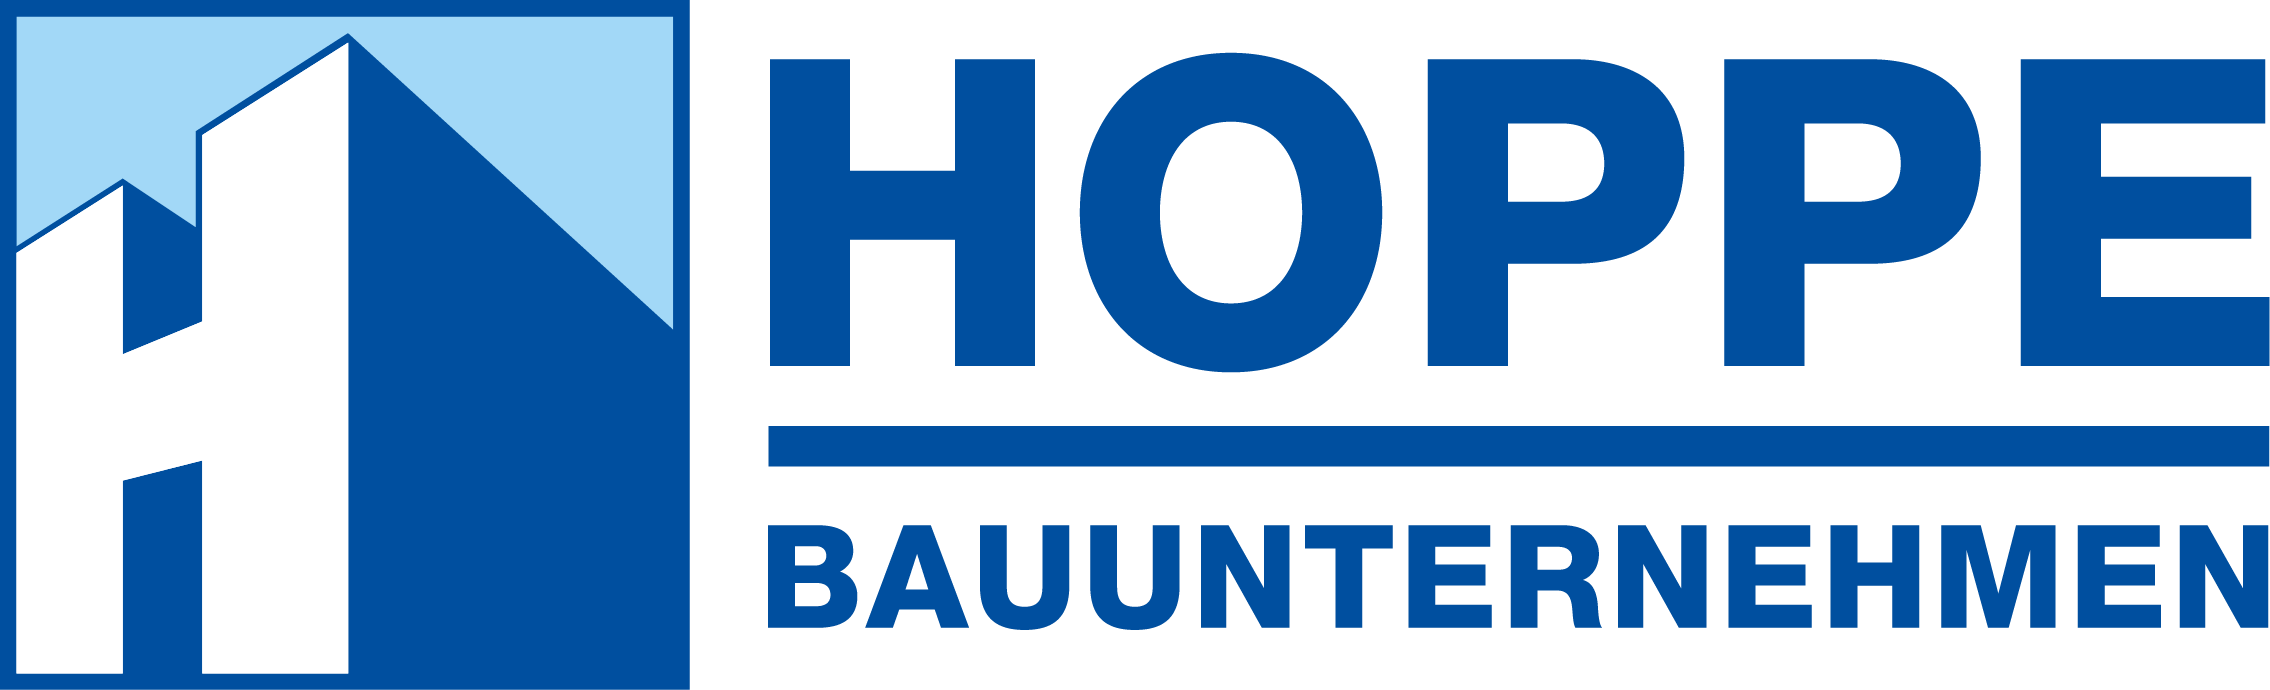 Hoppe Bauunternehmen Logo